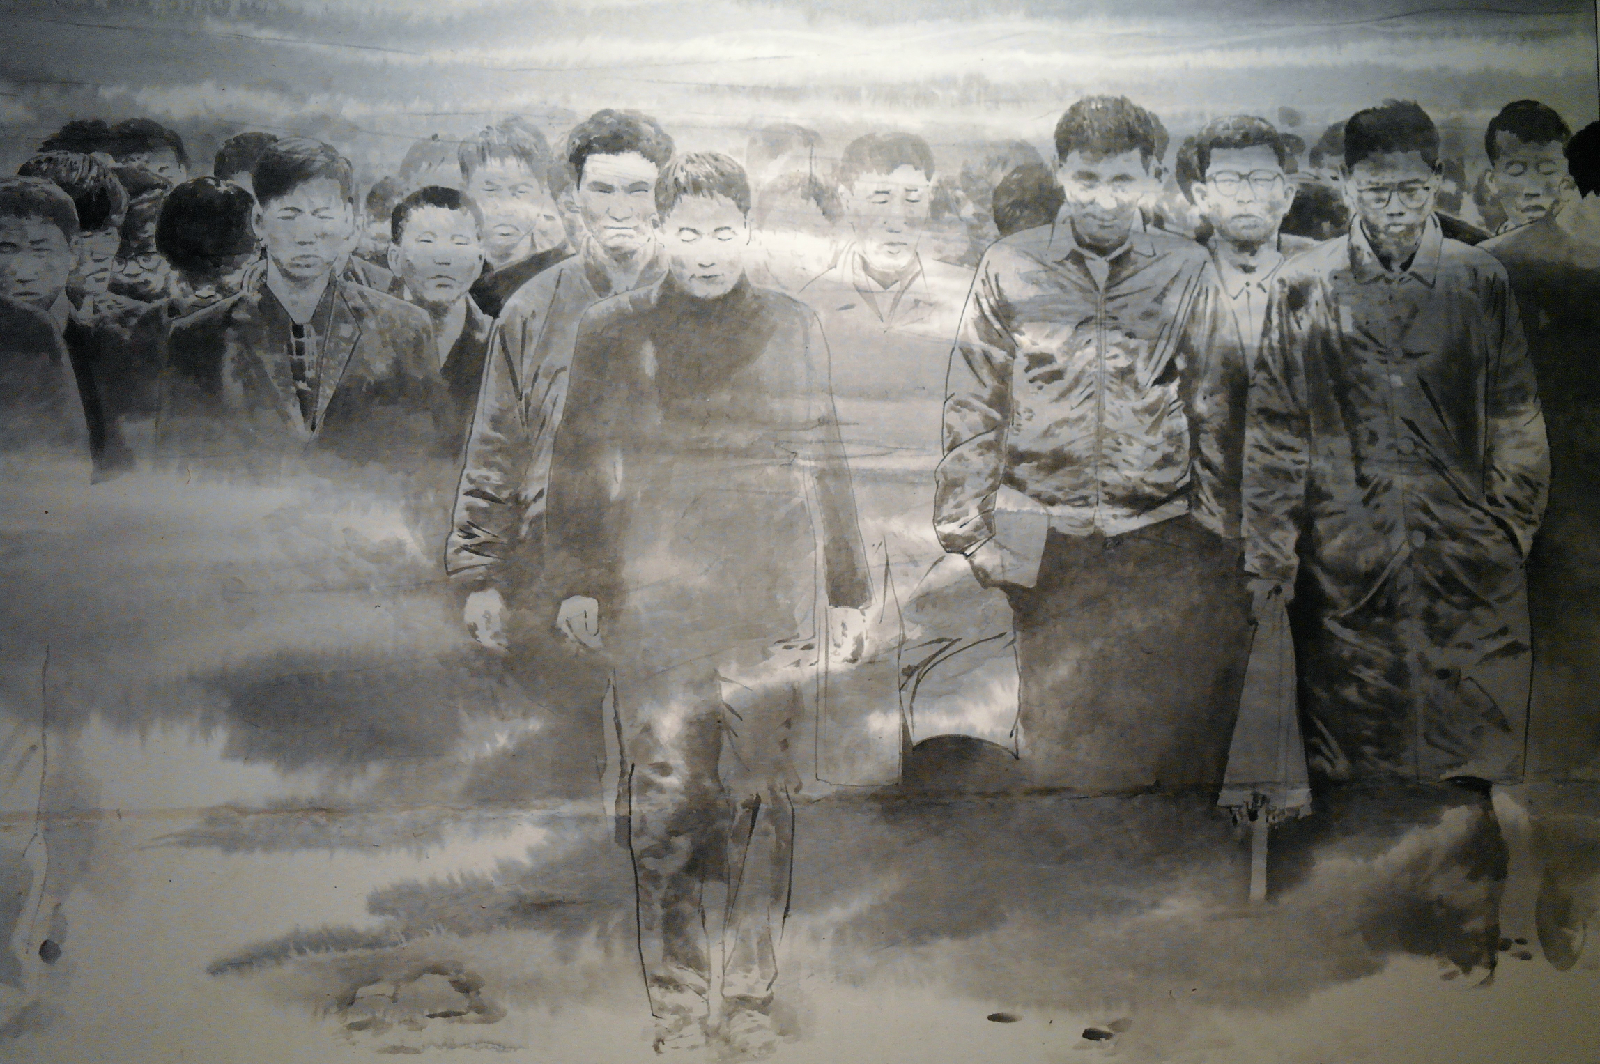  4·19 기념식을 끝마치고 걷고 있는 대학생들 표현한 작품, 김호석의 <침묵시위>, 1992년